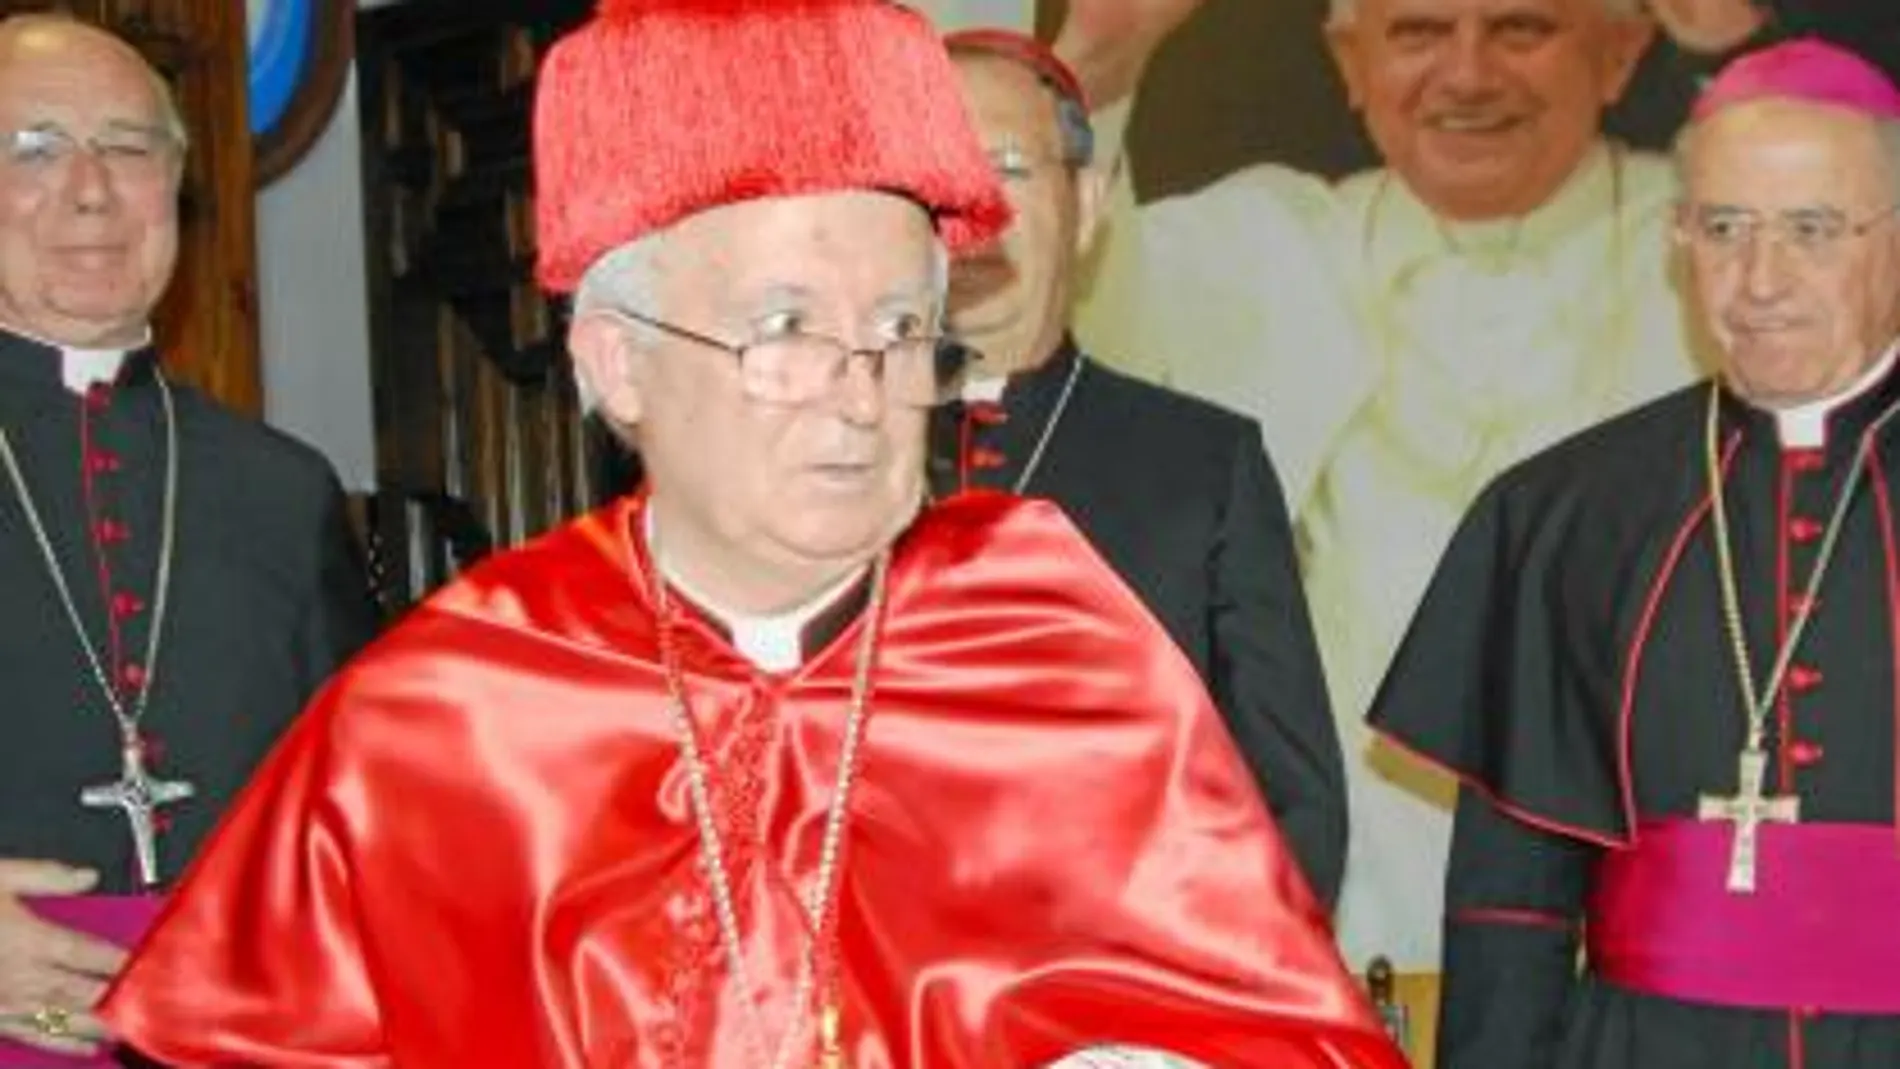 Los obispos de Zaragoza, Burgos, Cartagena, Albacete y Orihuela acompañaron al cardenal en su investidura